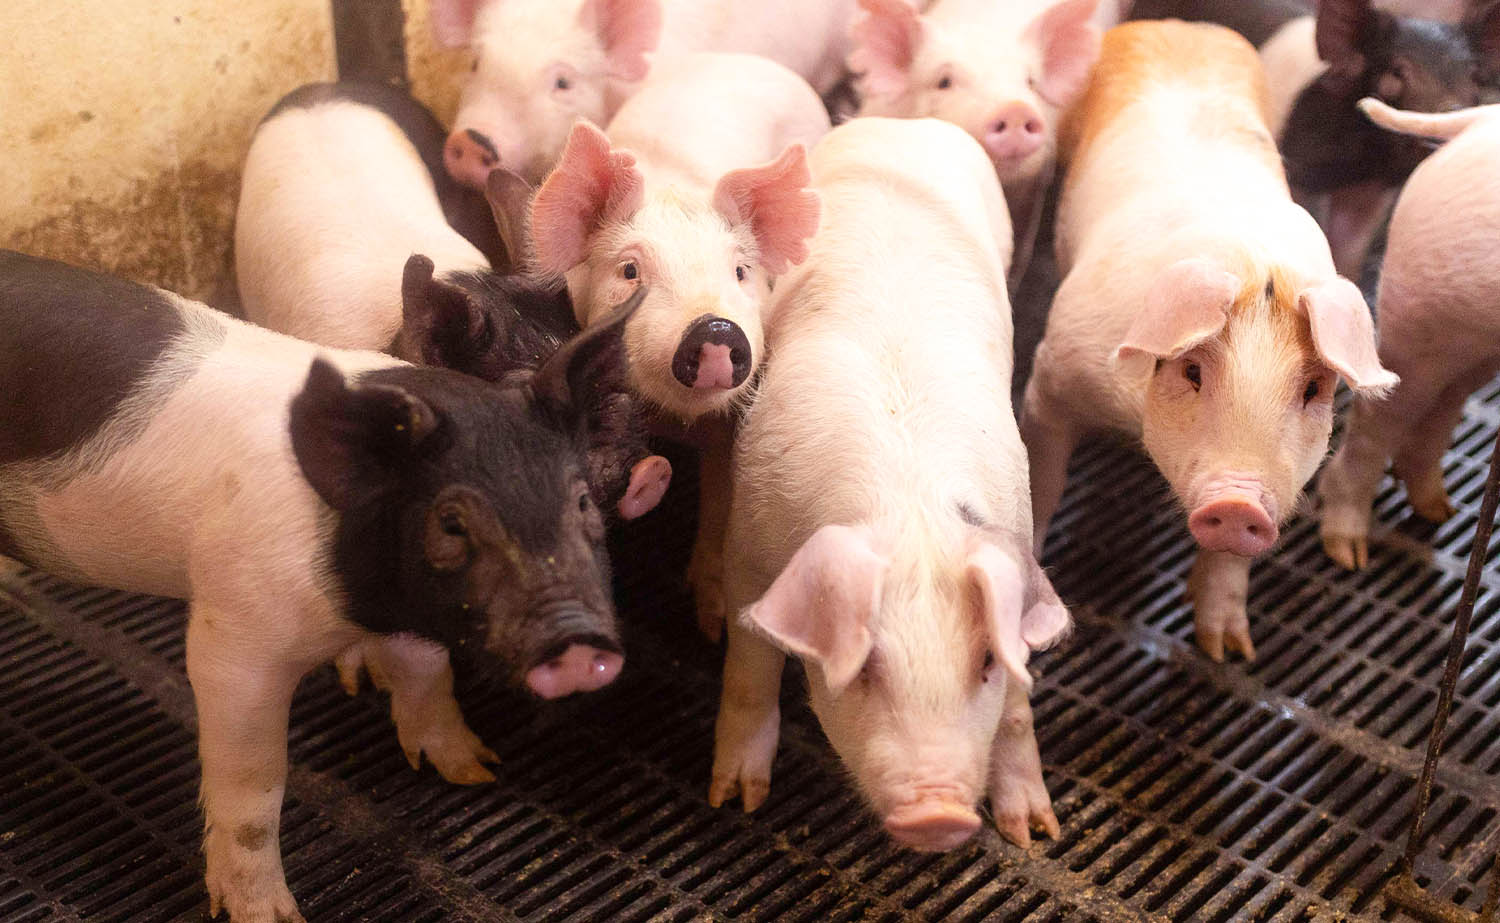 Pigs on Iowan farm